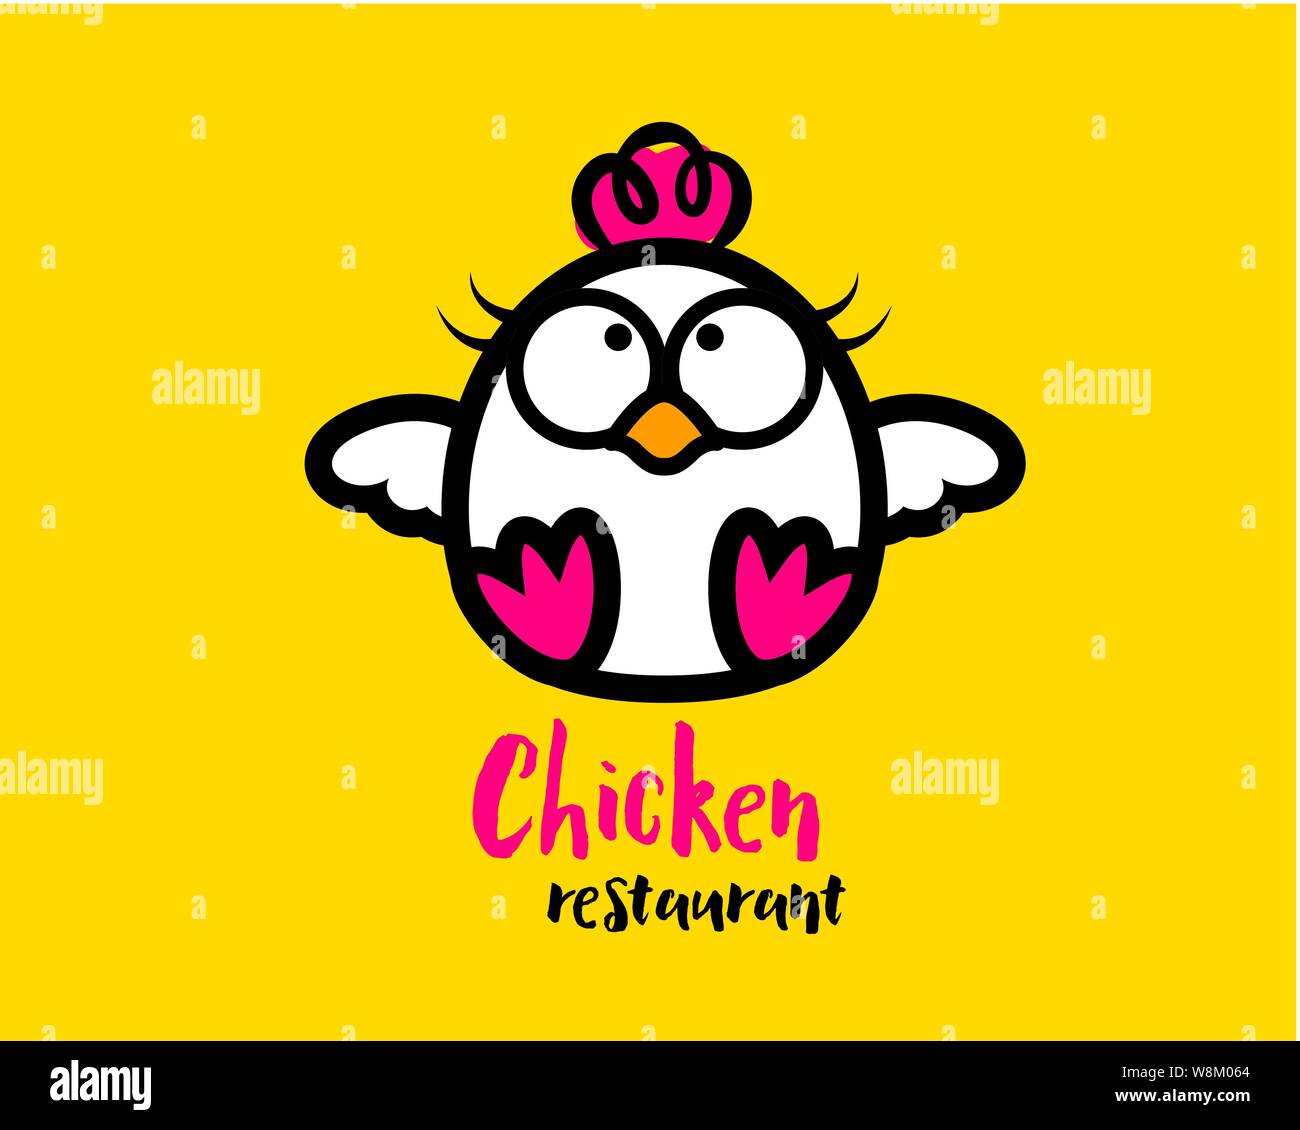 Niedliches Huhn Maskottchen Charakter für Food Restaurant - illustratives Logo Stock Vektor